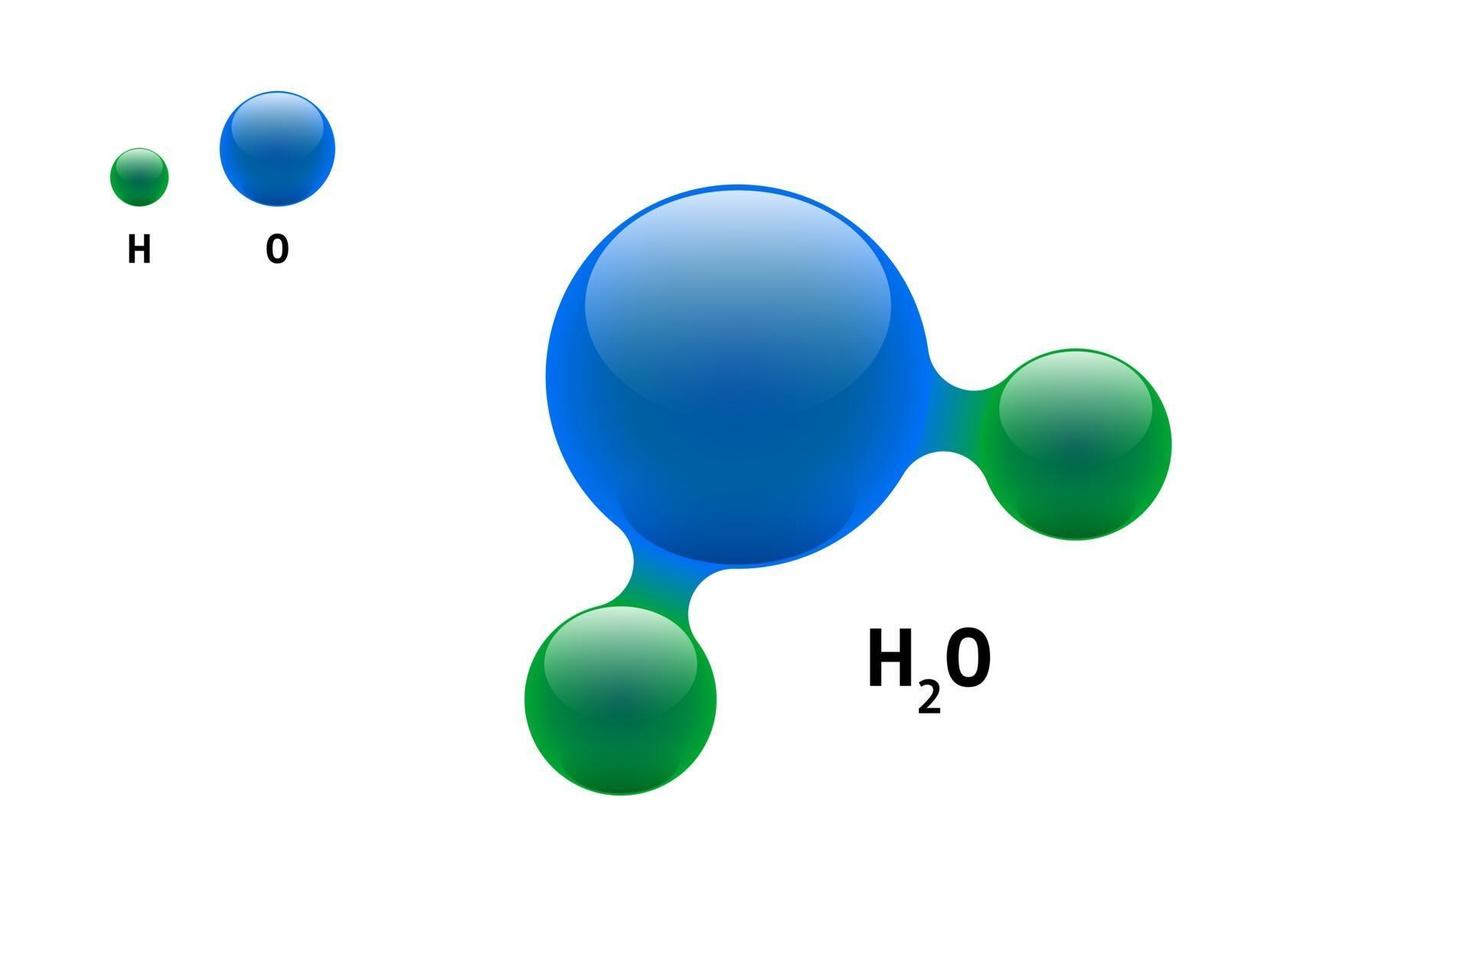 kemimodell molekyl vatten H2O vetenskapliga element formel. integrerade partiklar naturlig oorganisk 3d molekylär struktur bestående. två väte och syre volym atom vektor isolerade sfärer